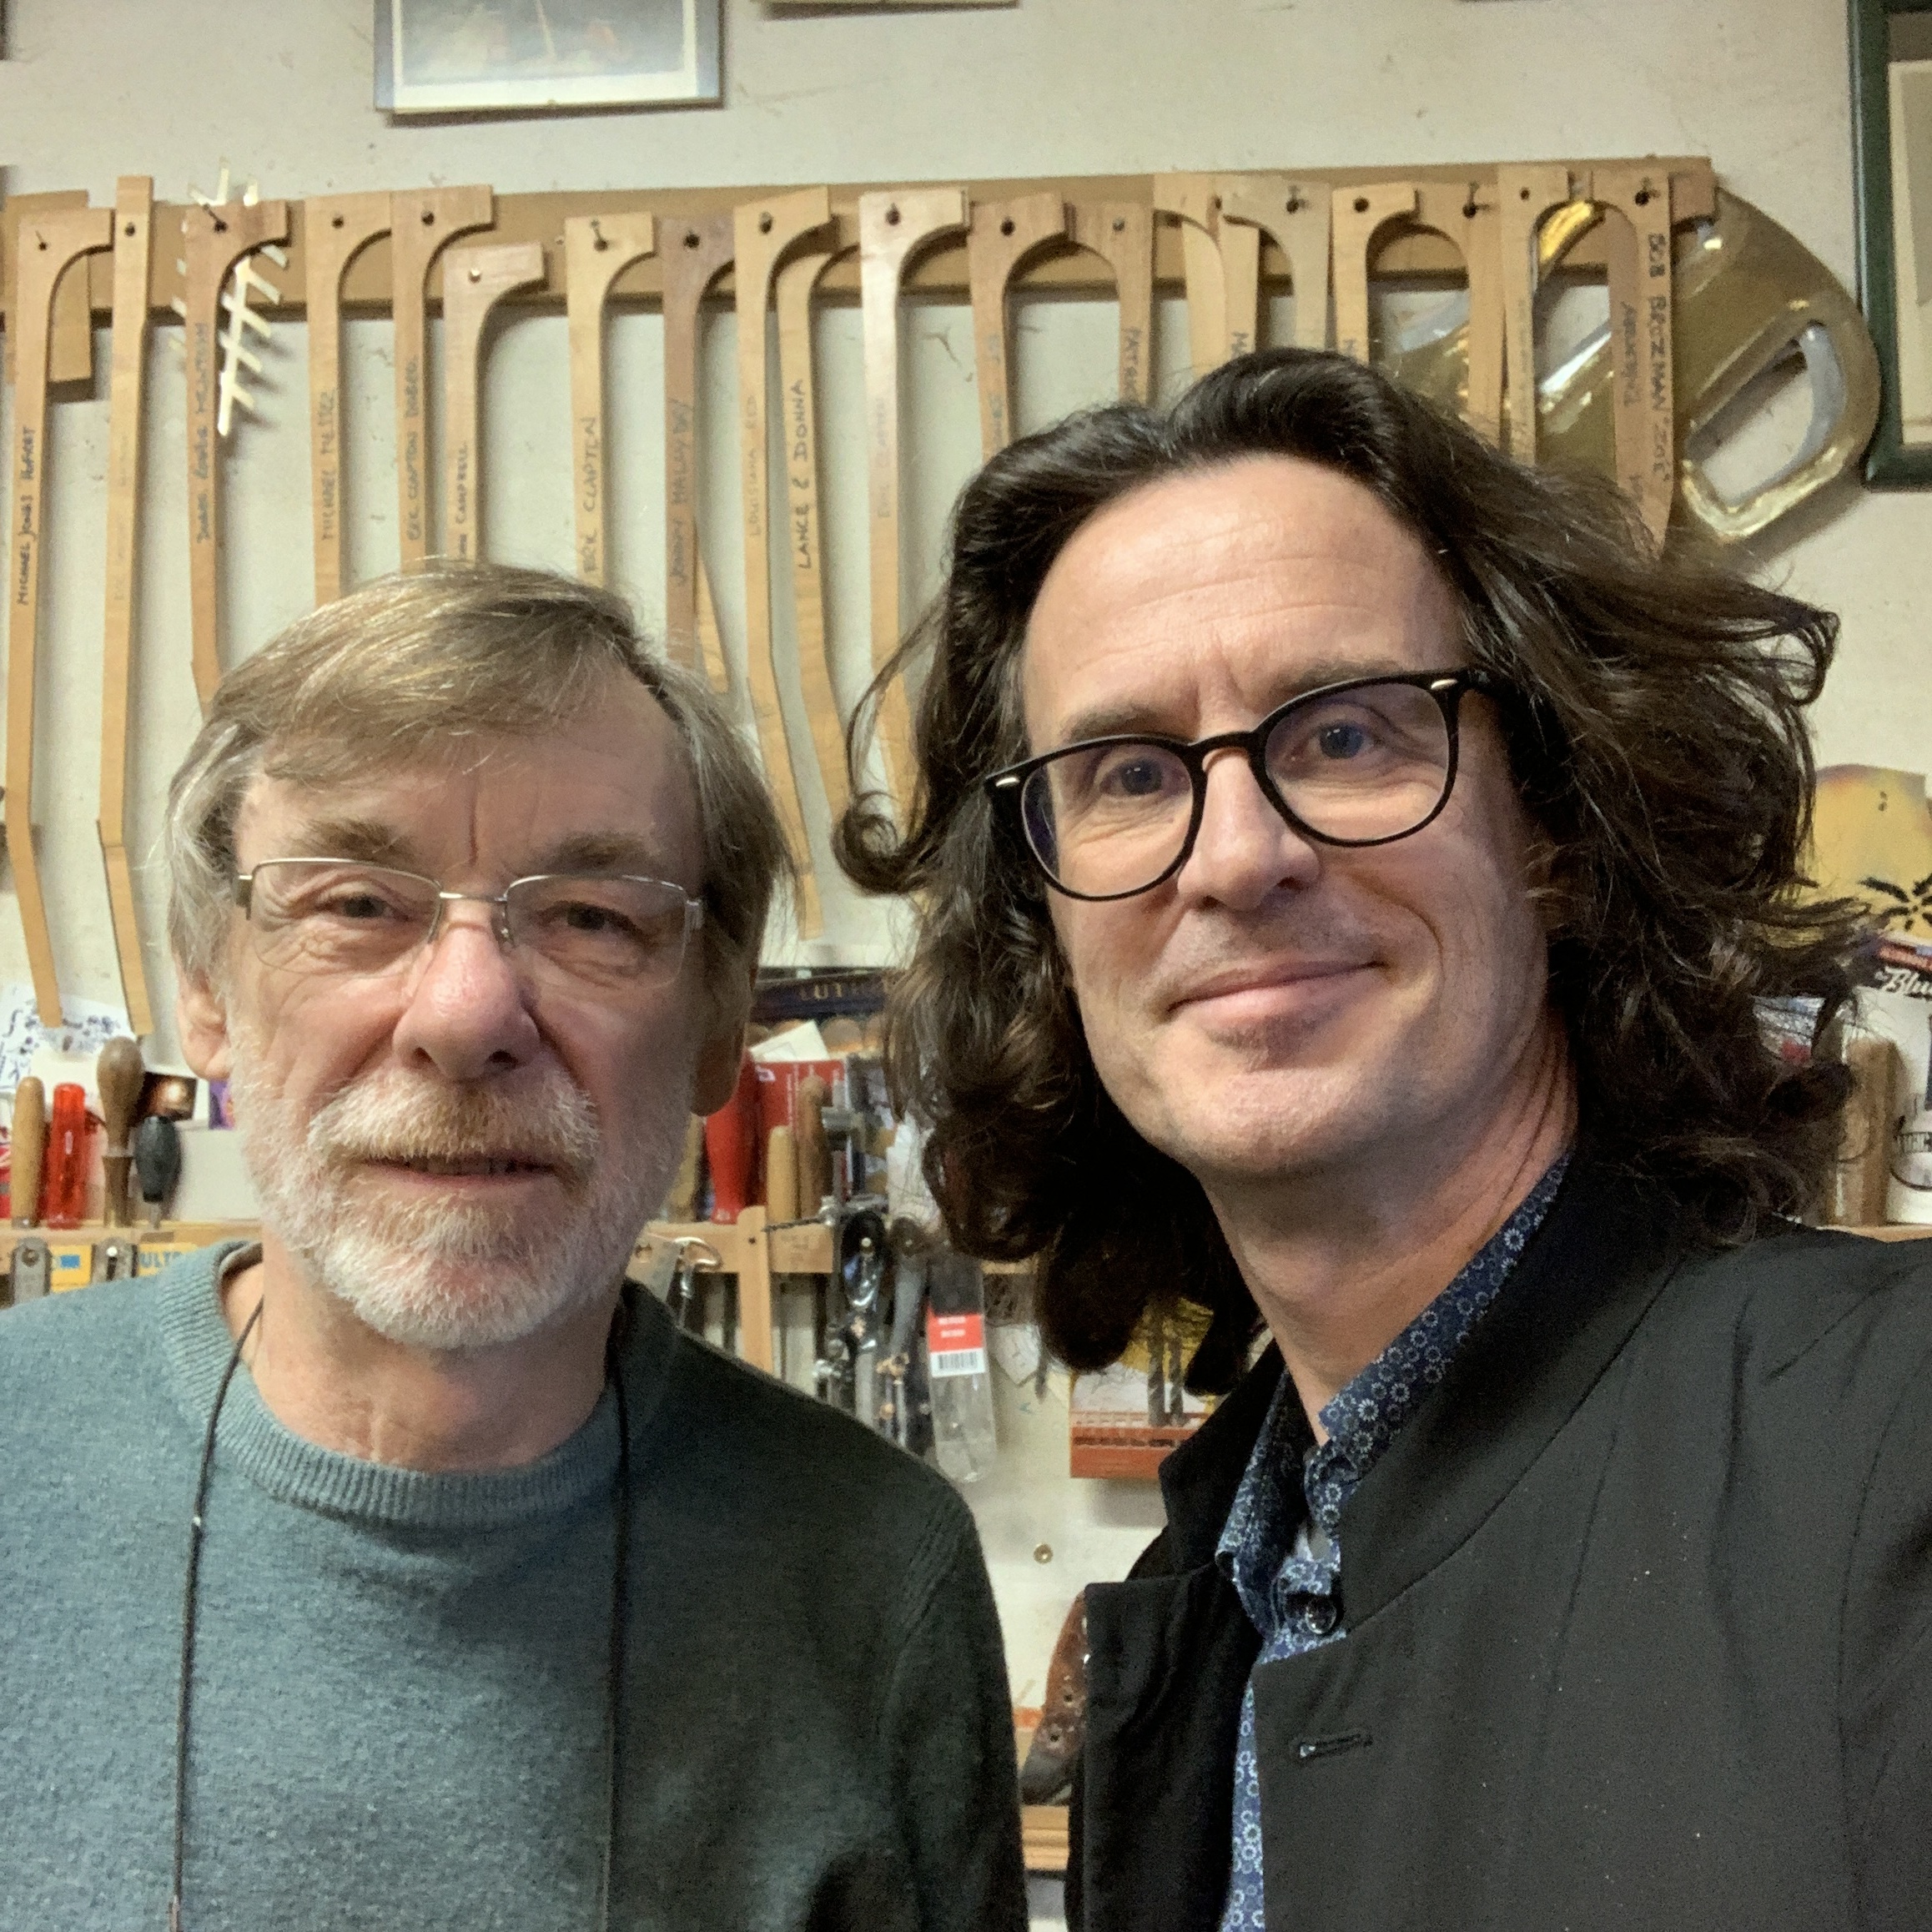 Mike Lewis, son histoire avec Eric Clapton, le coup de fil de George Harrison et d'autres histoires